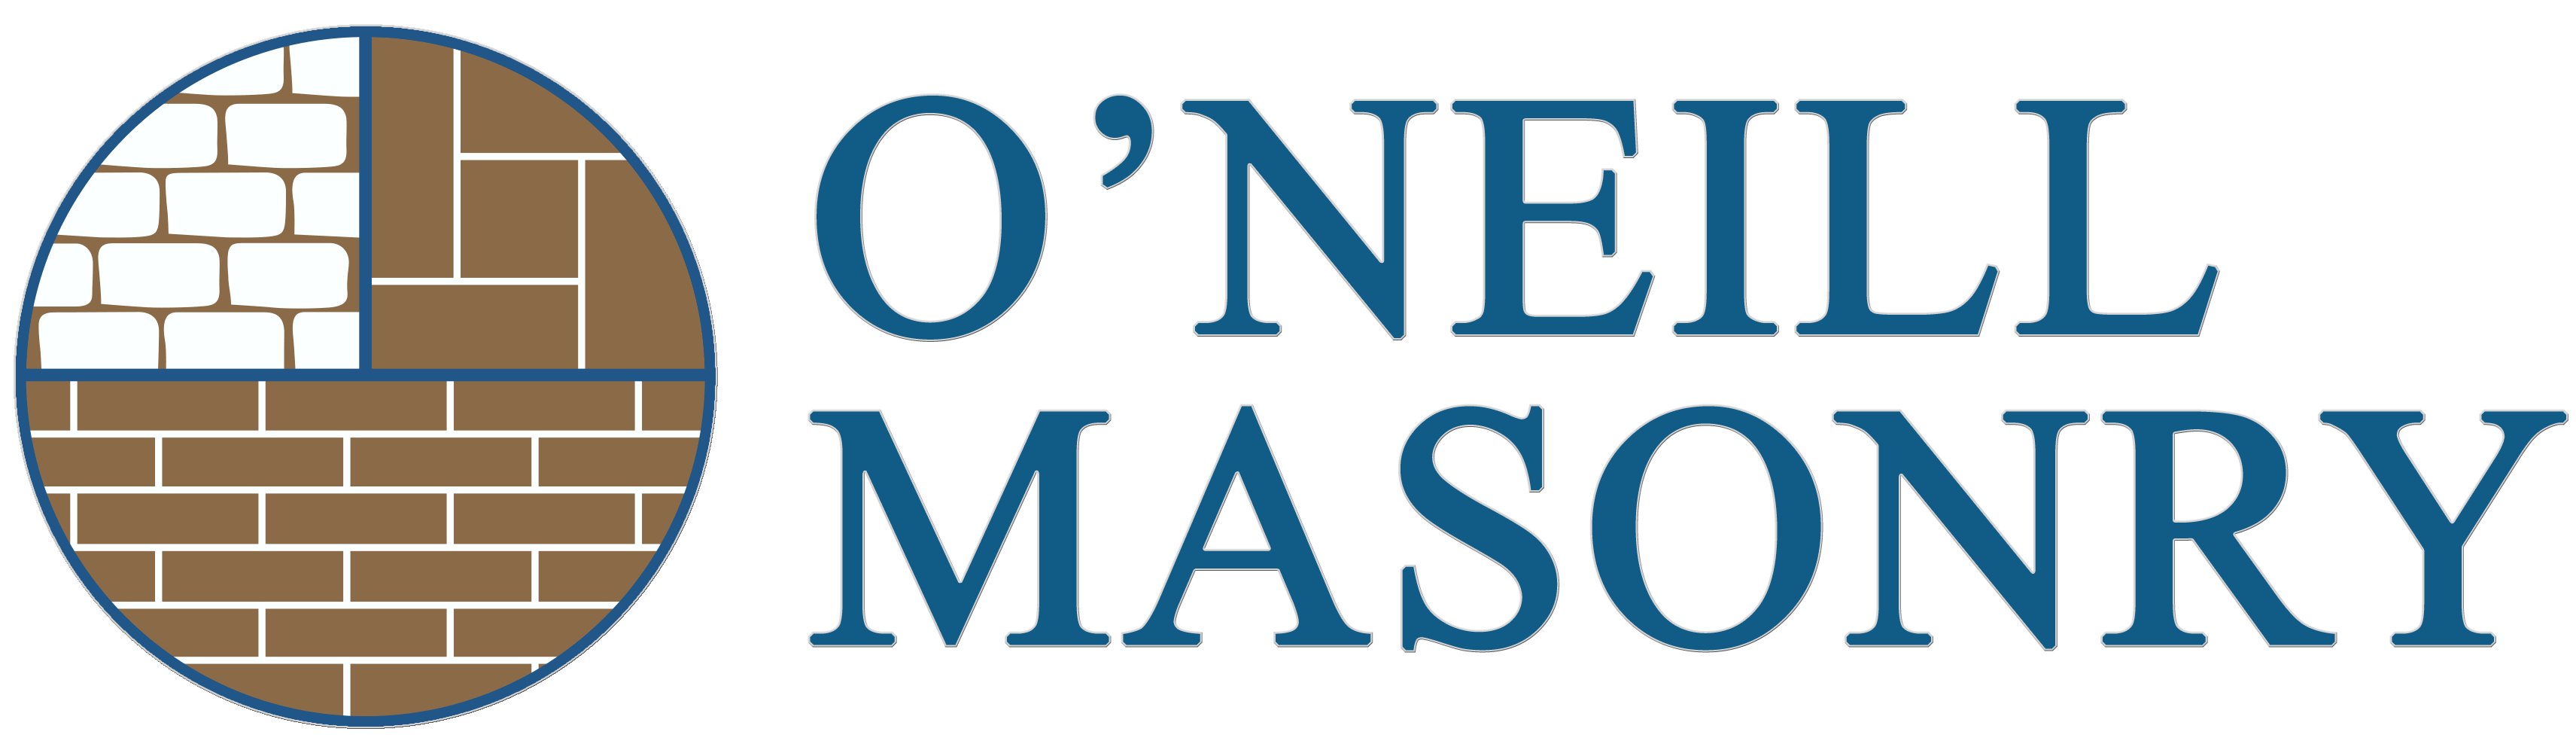 O'Neill Masonry brick texture logo inside, navy blue border circle and text